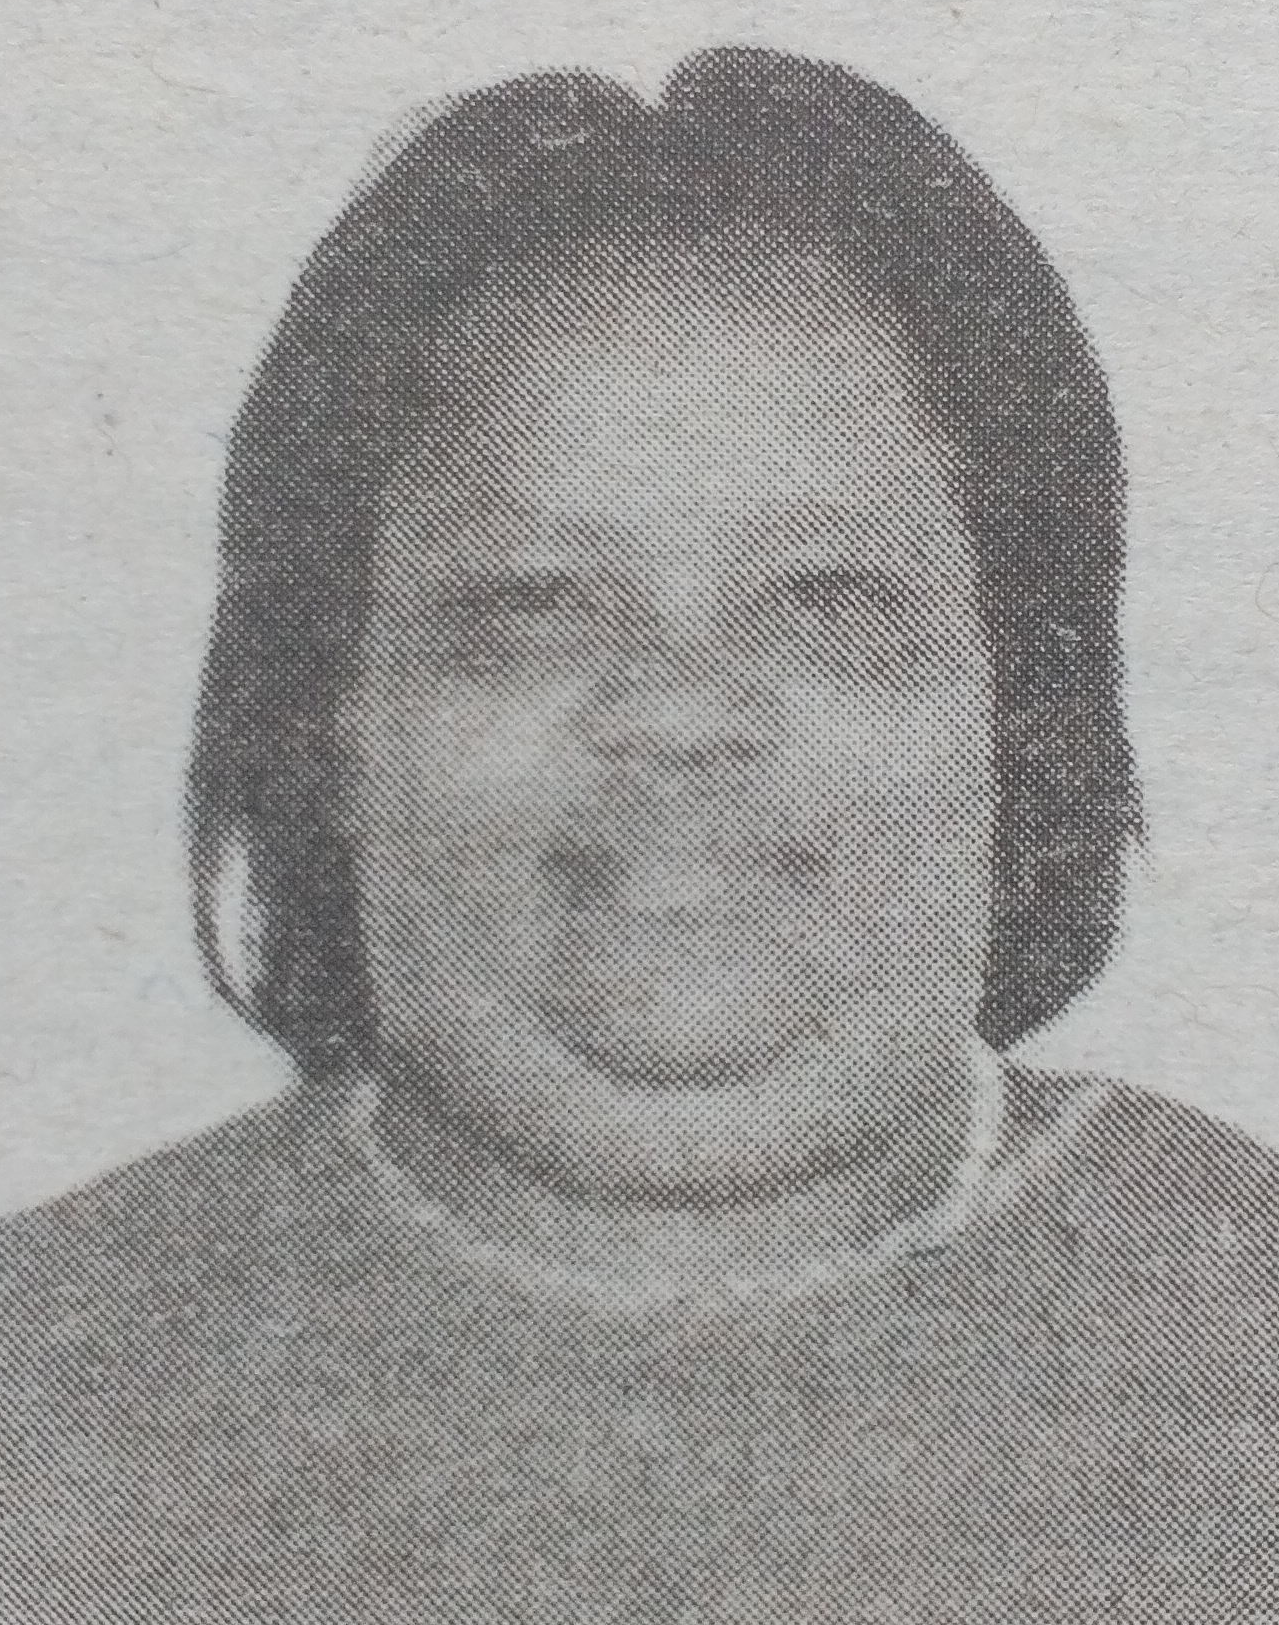 Obituary Image of Dorothy Naisiaye Keriasek